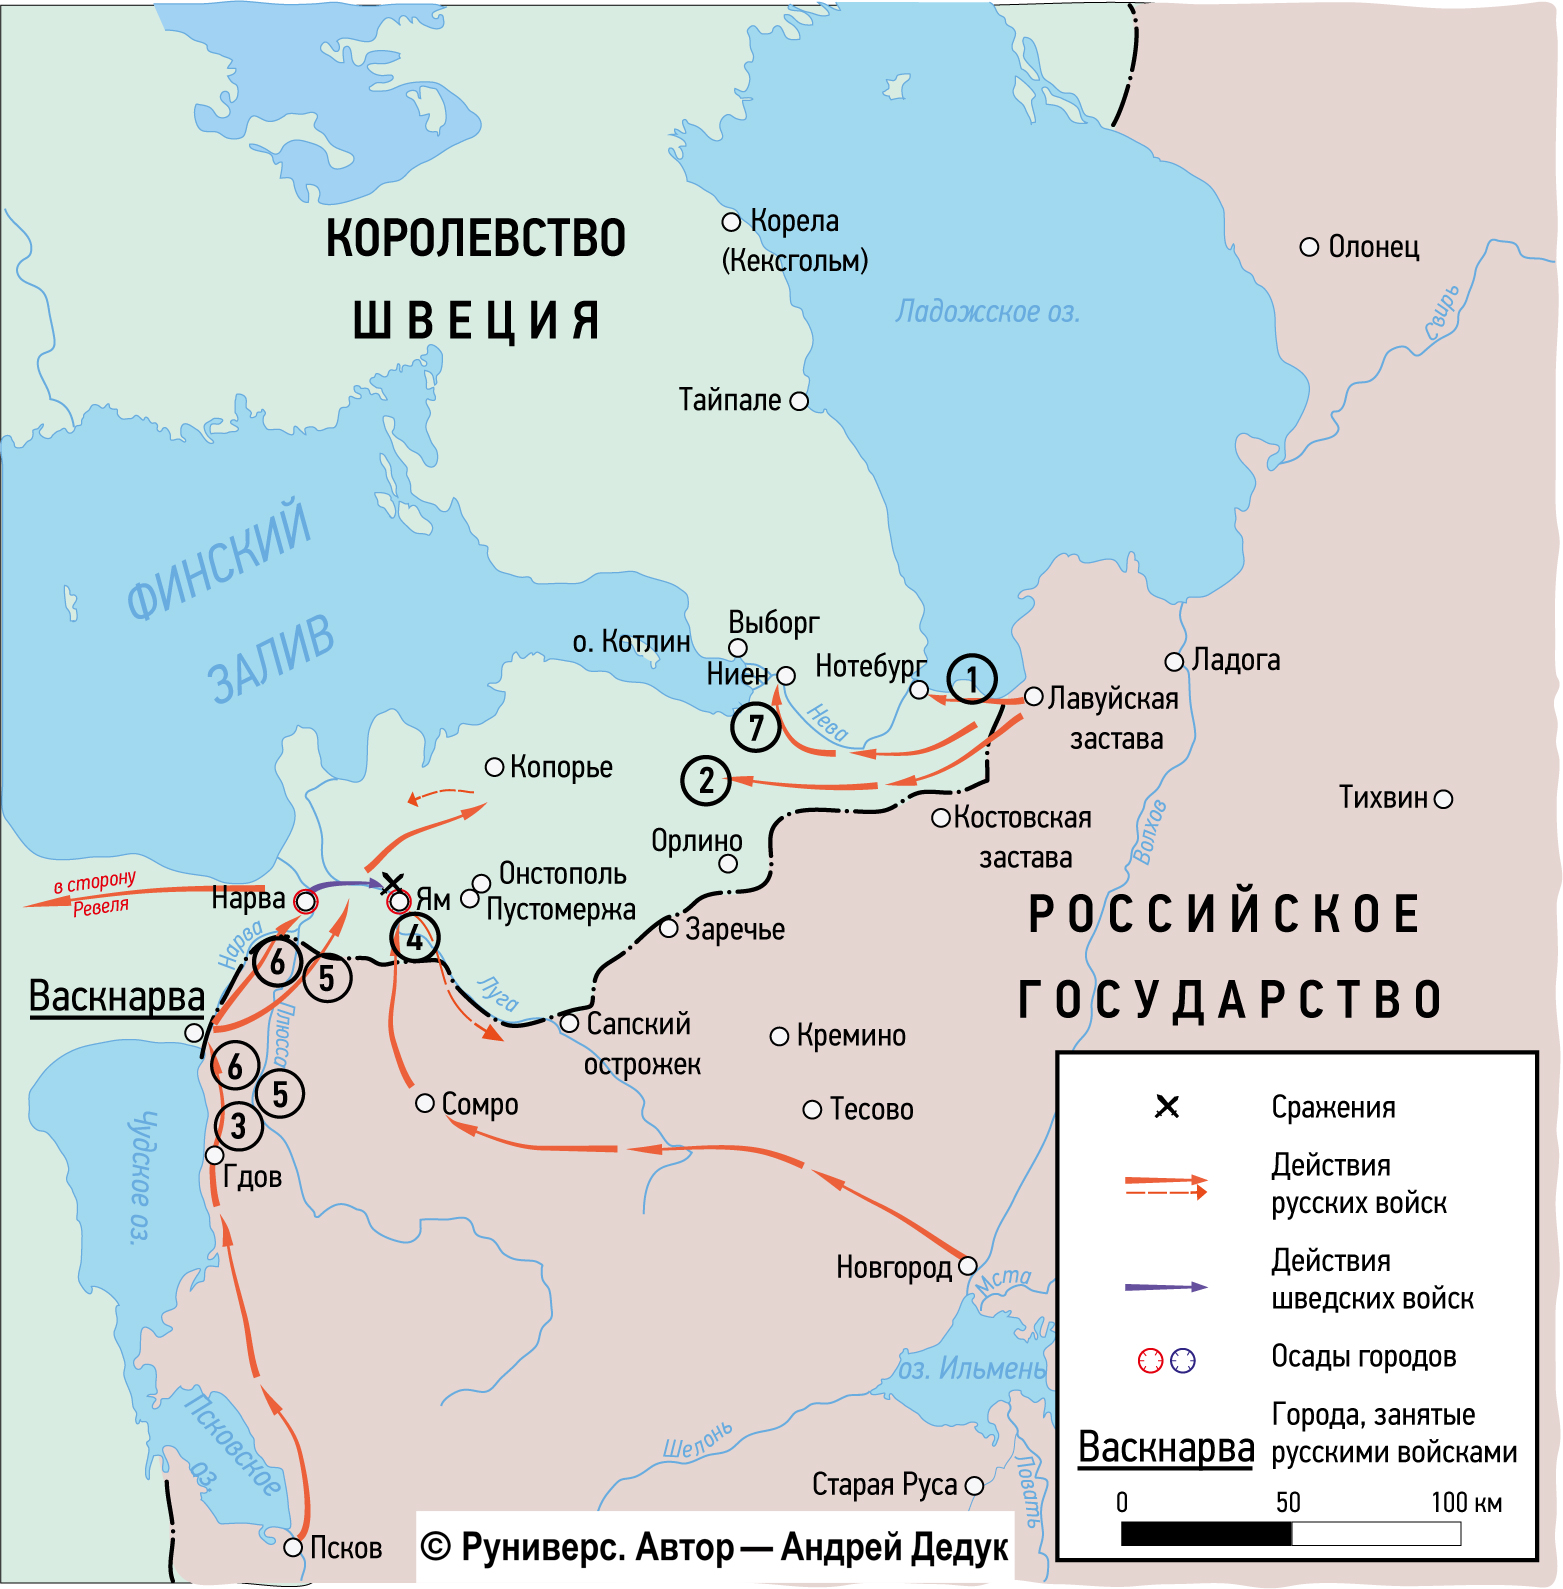 Зимняя кампания 1657–1658 гг. в Эстляндии и Ижорской земле